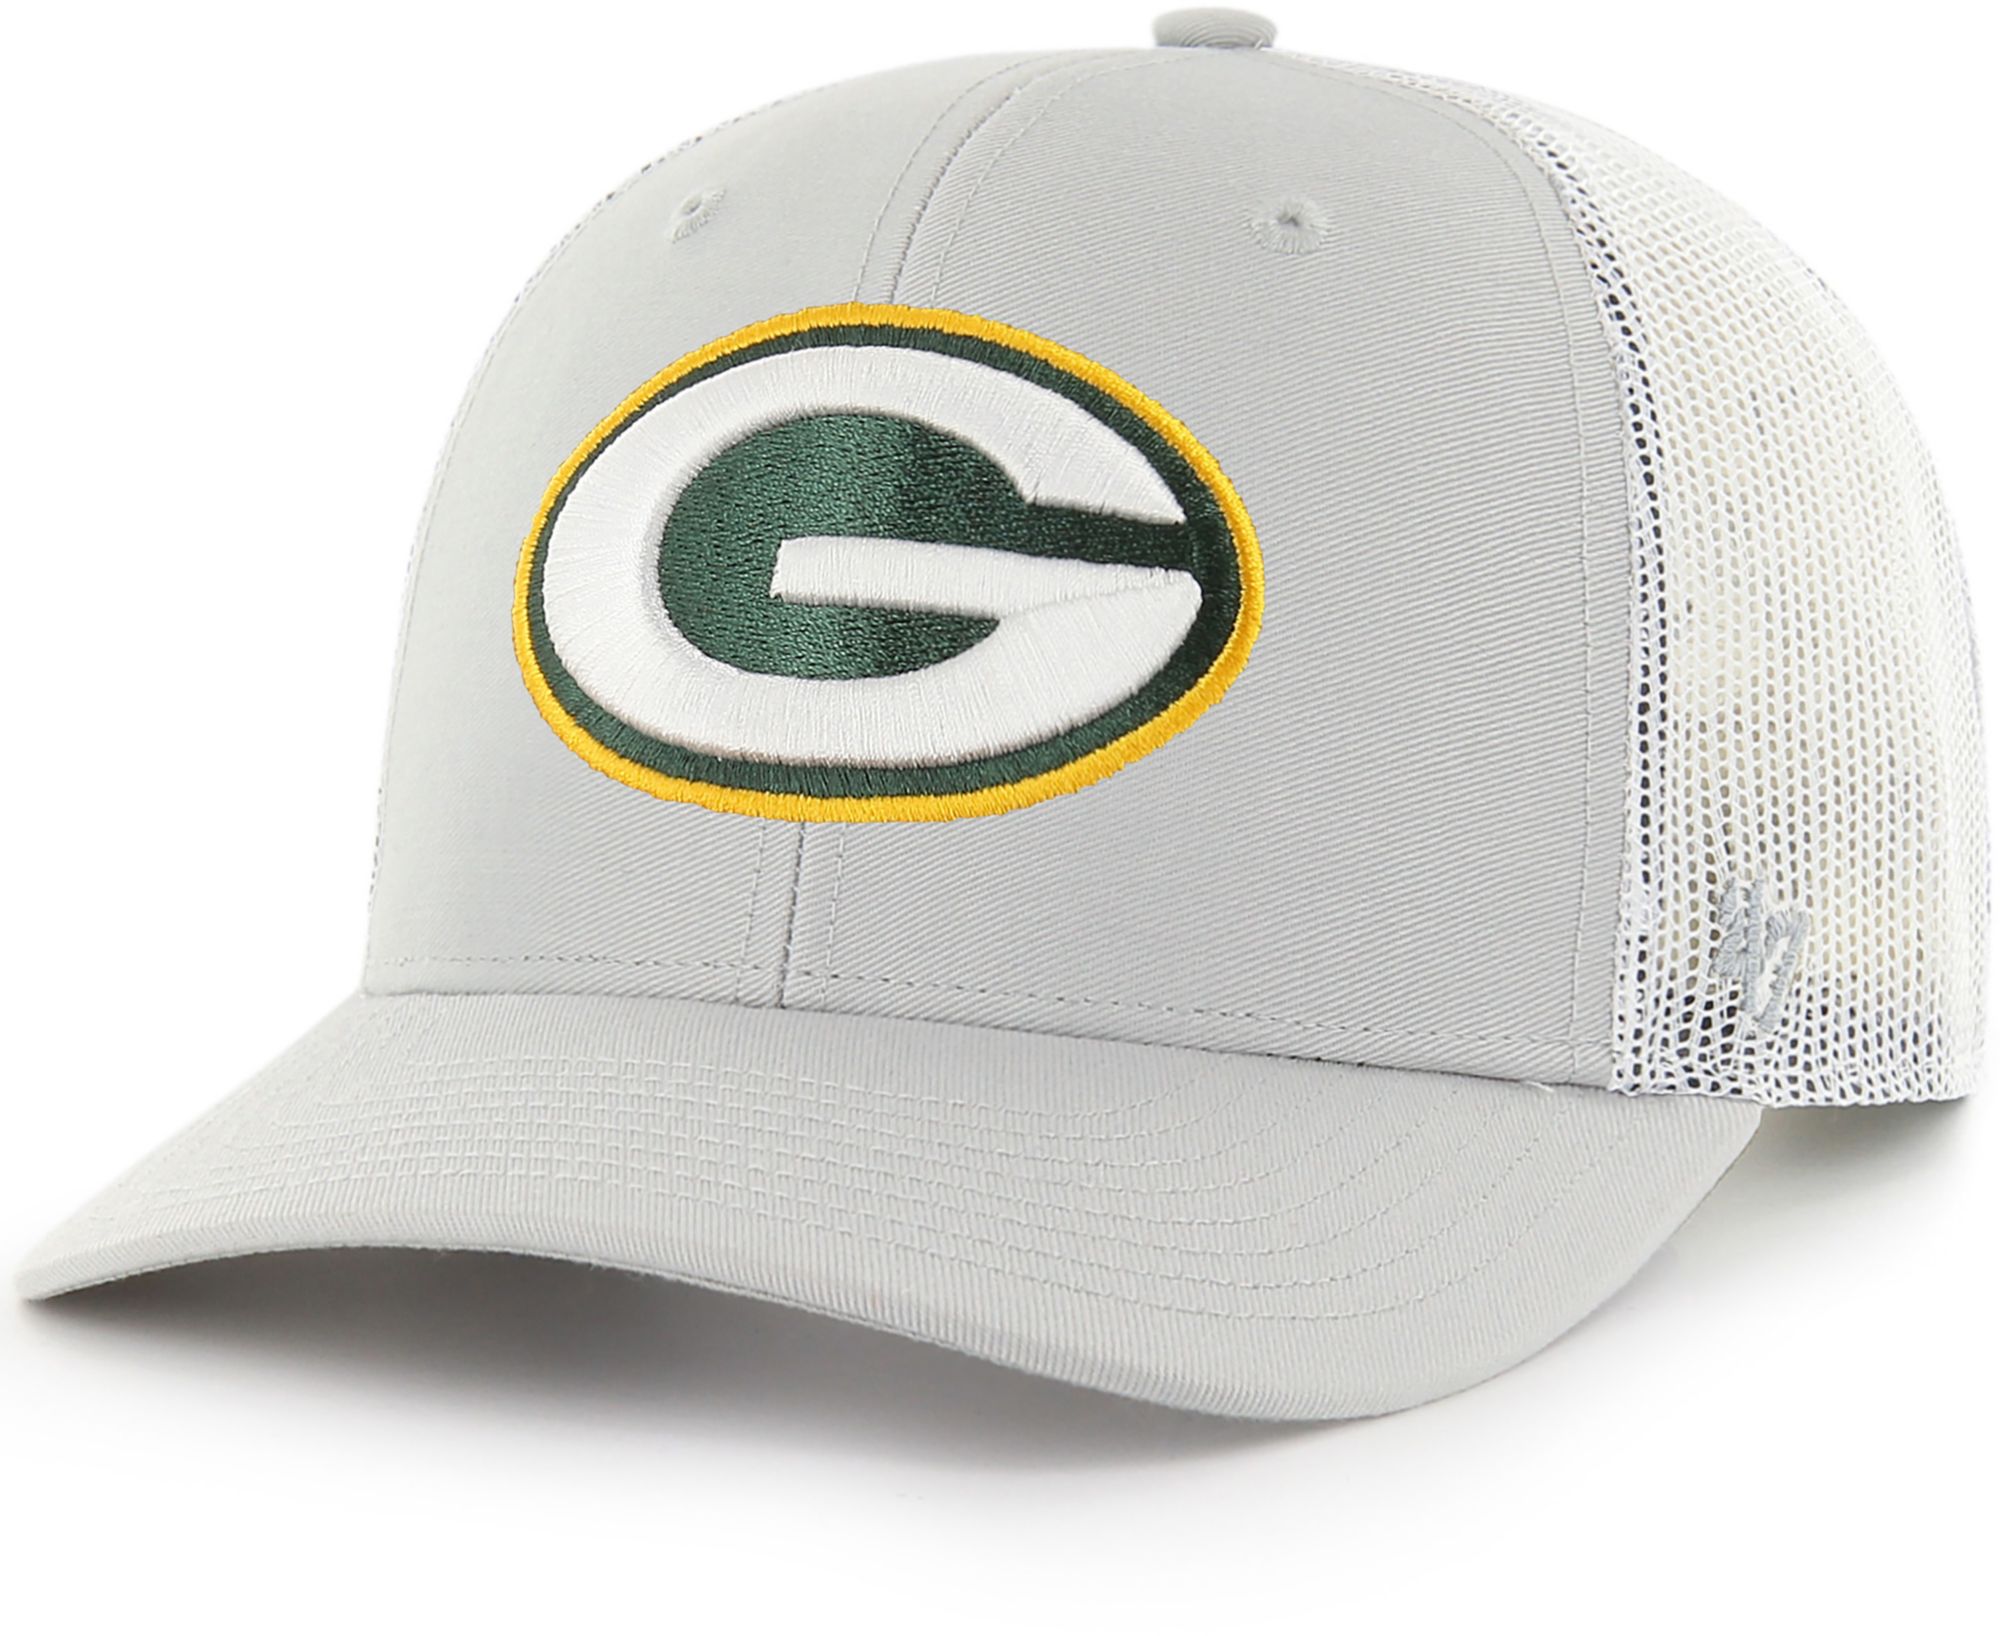 Men's '47 Camo/Black Green Bay Packers Trucker Adjustable Hat